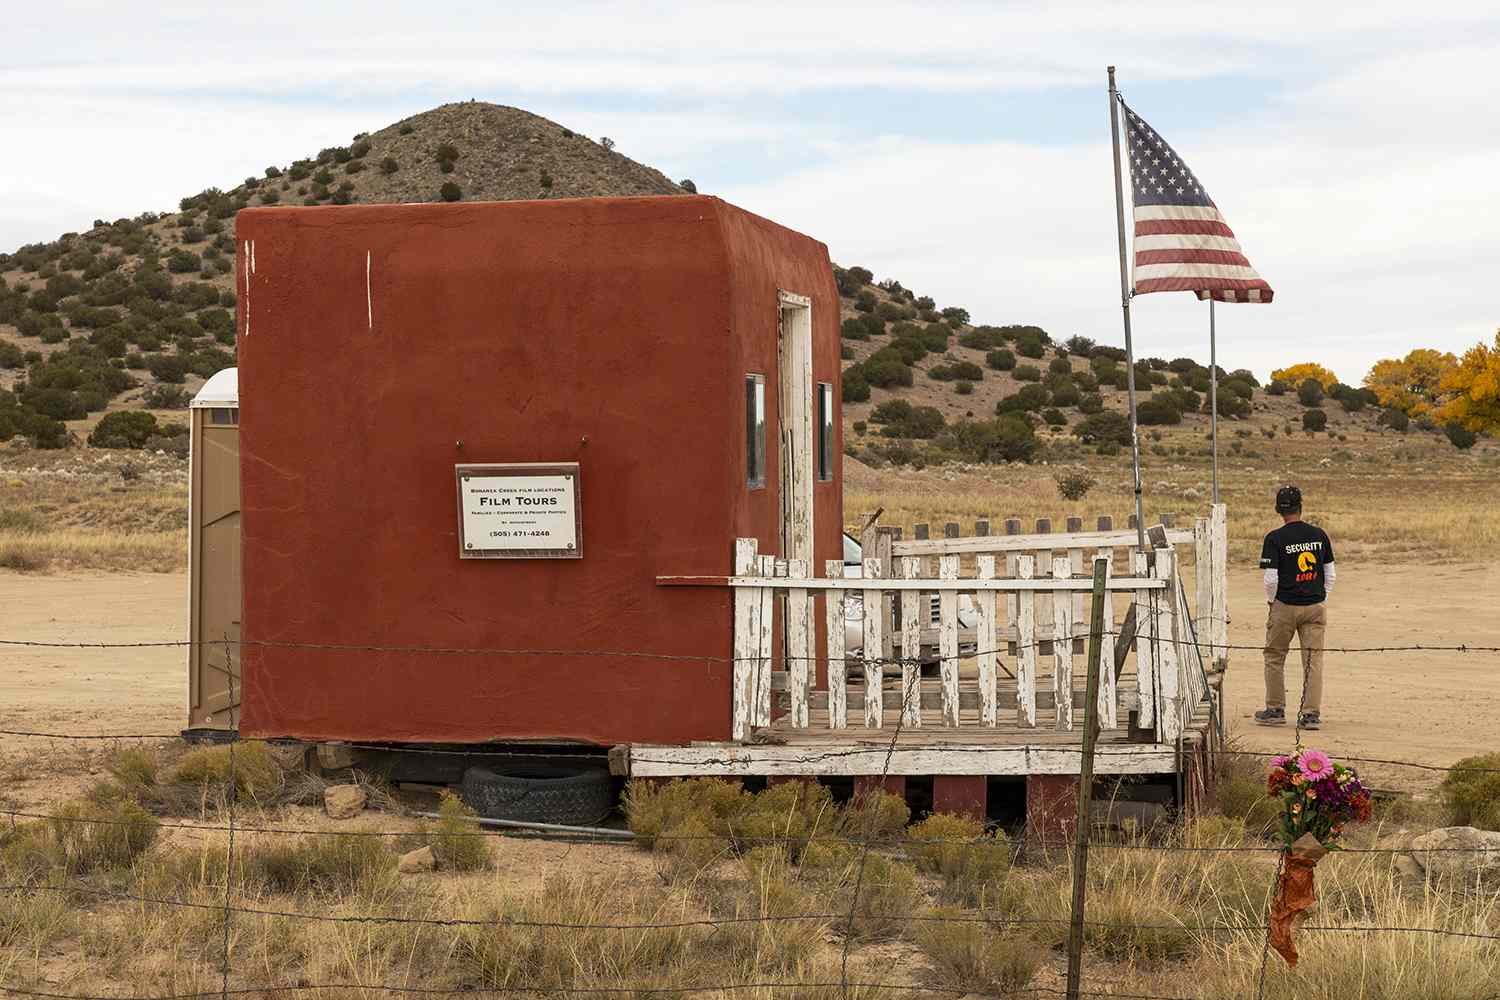 Bonanza Creek Ranch in New Mexico, where 'Rust' was filmed